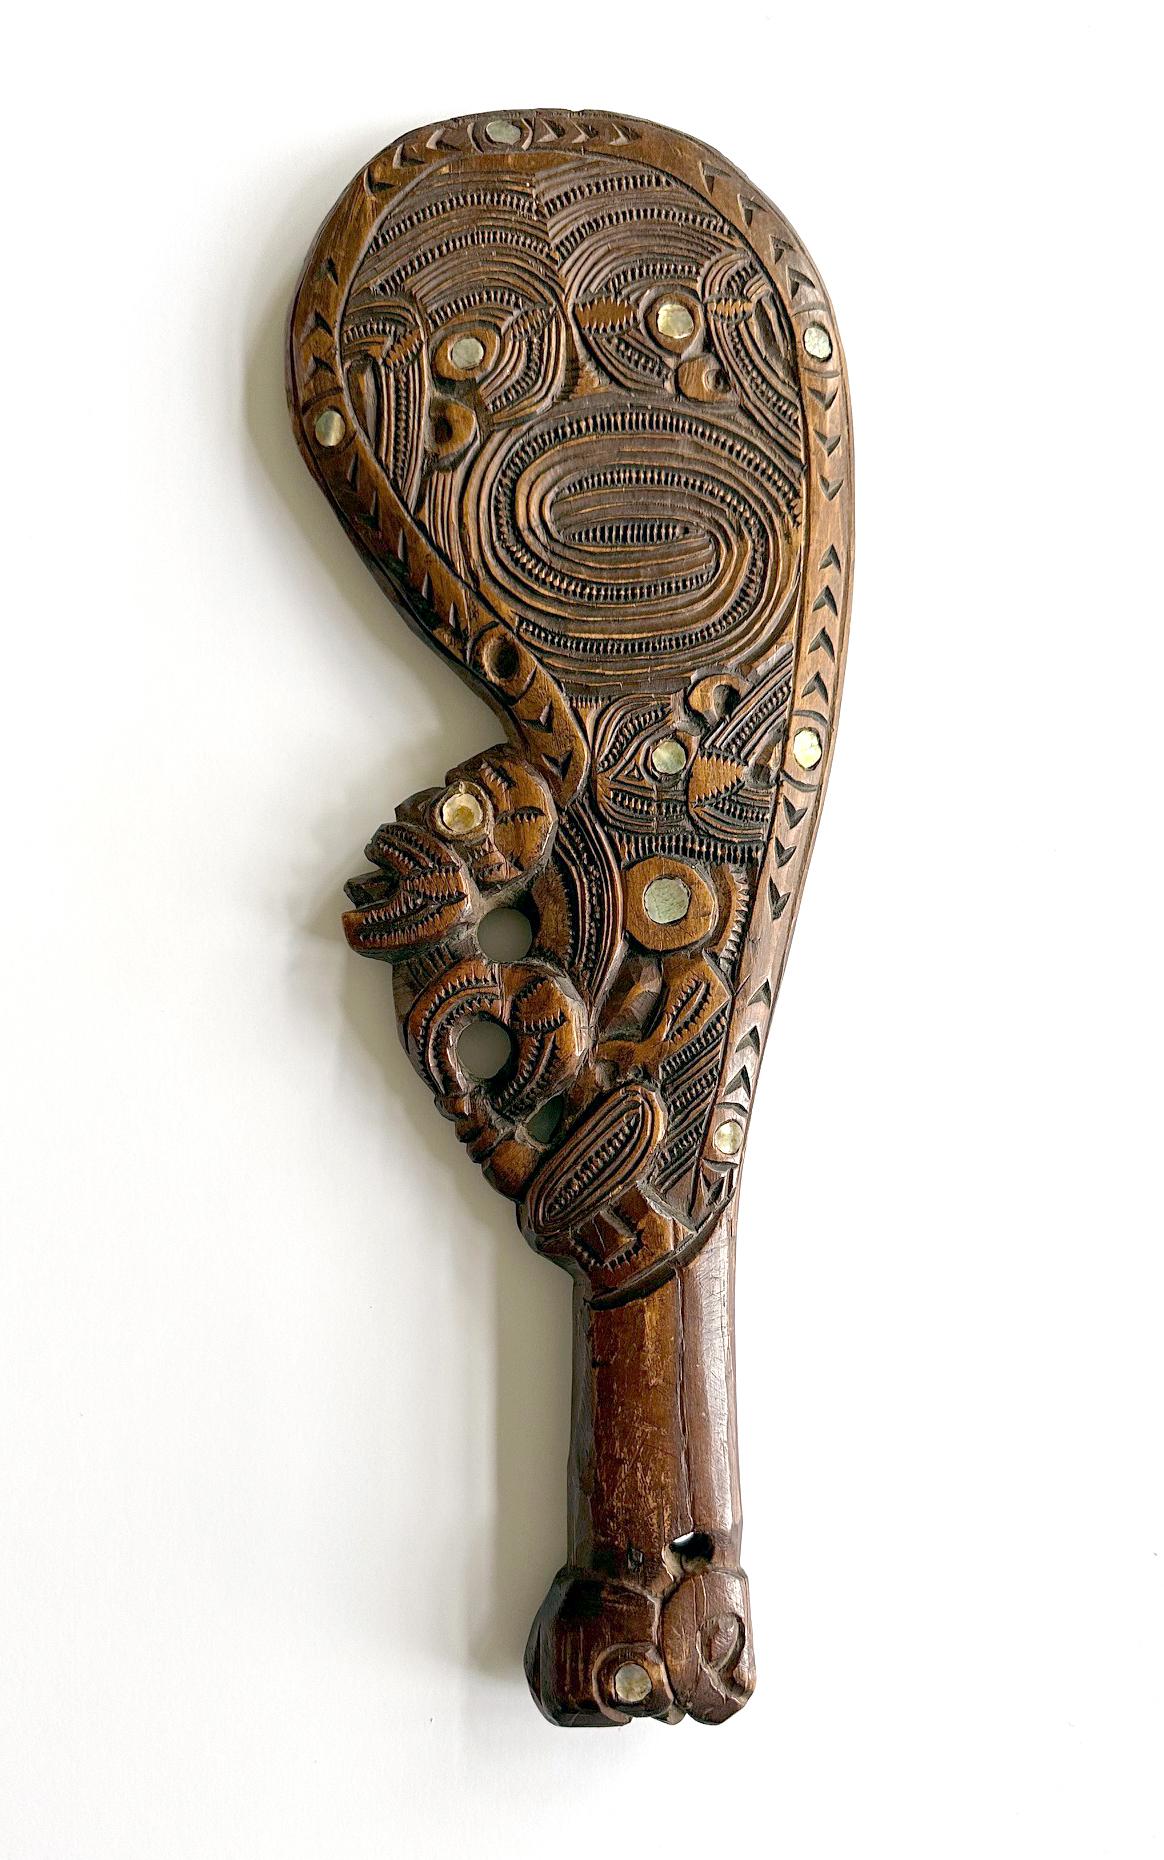 Club en bois connu sous le nom de Wahaika, sculpté et incrusté de petits coquillages ronds, originaire de Nouvelle-Zélande, vers les années 1920. La massue à poignée était traditionnellement utilisée comme arme de combat à courte distance avant le